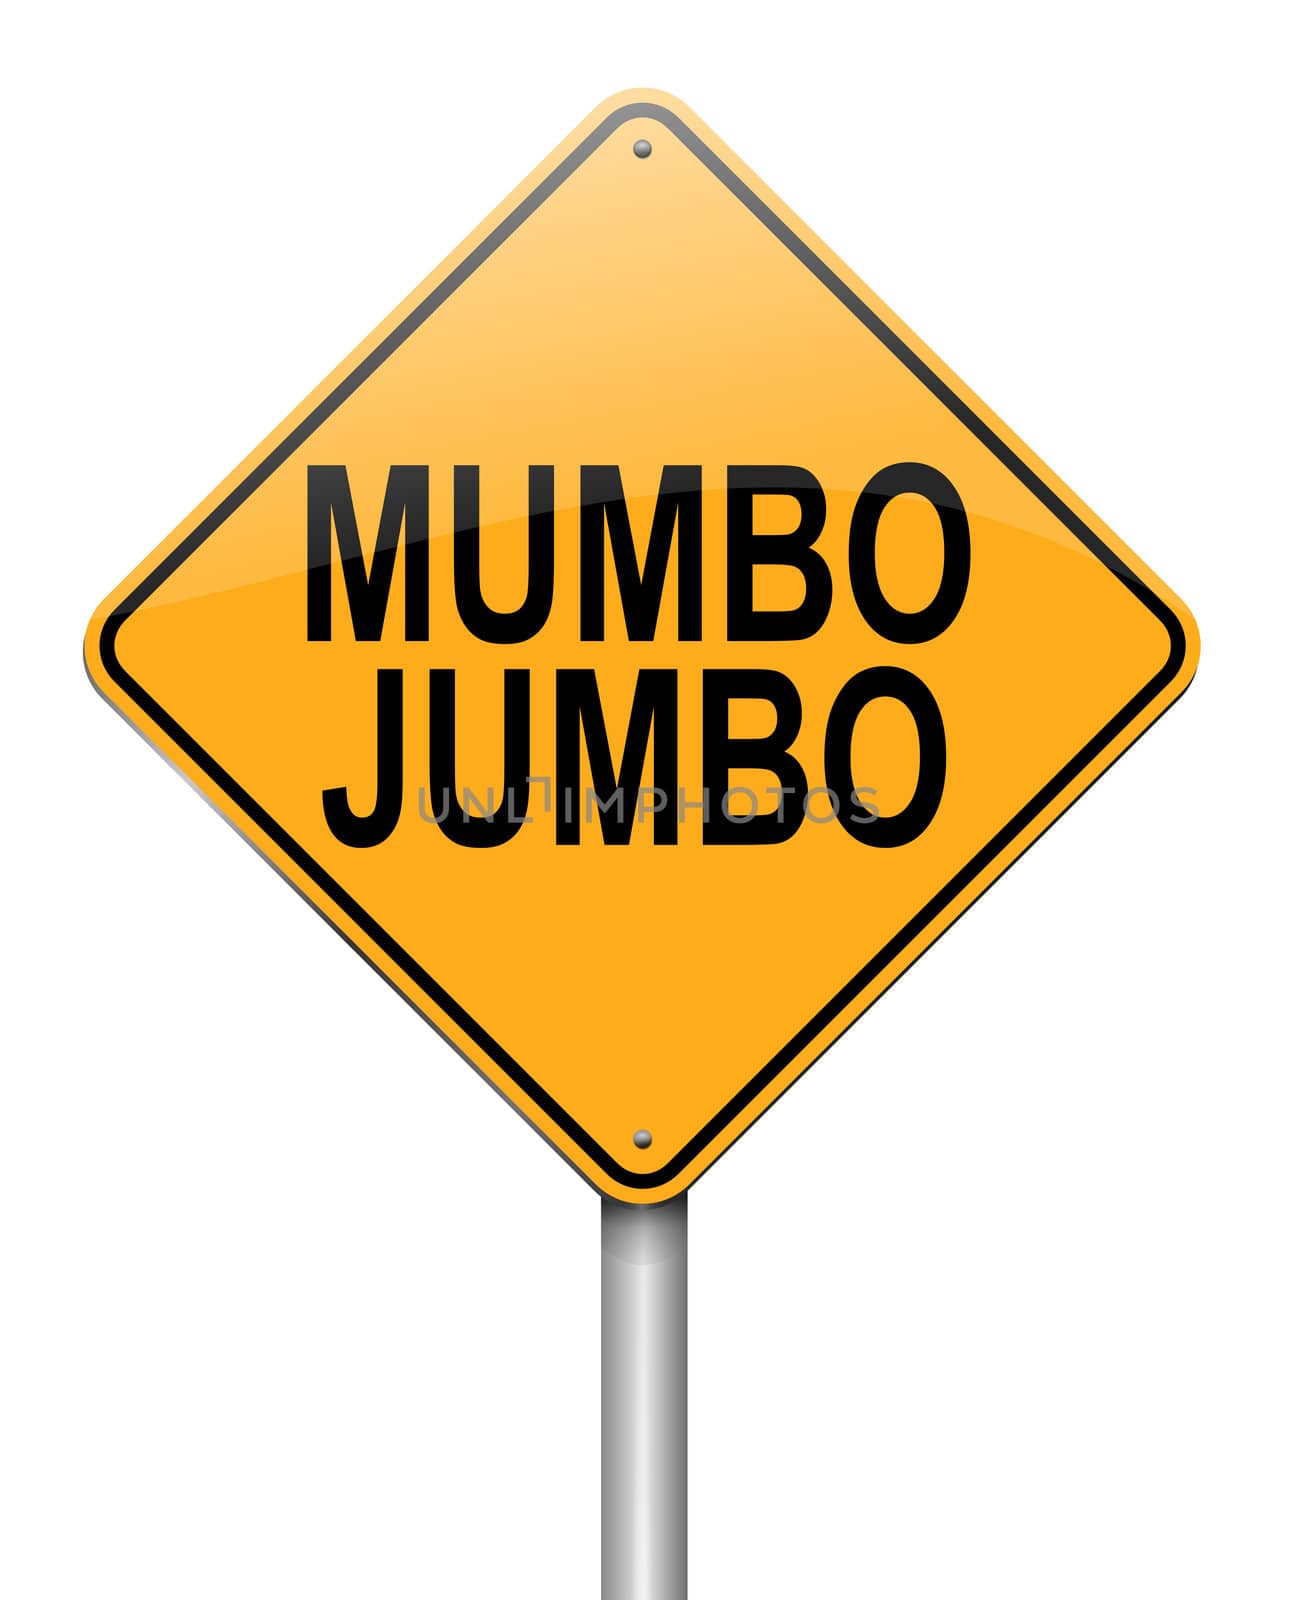 Mumbo jumbo concept. by 72soul